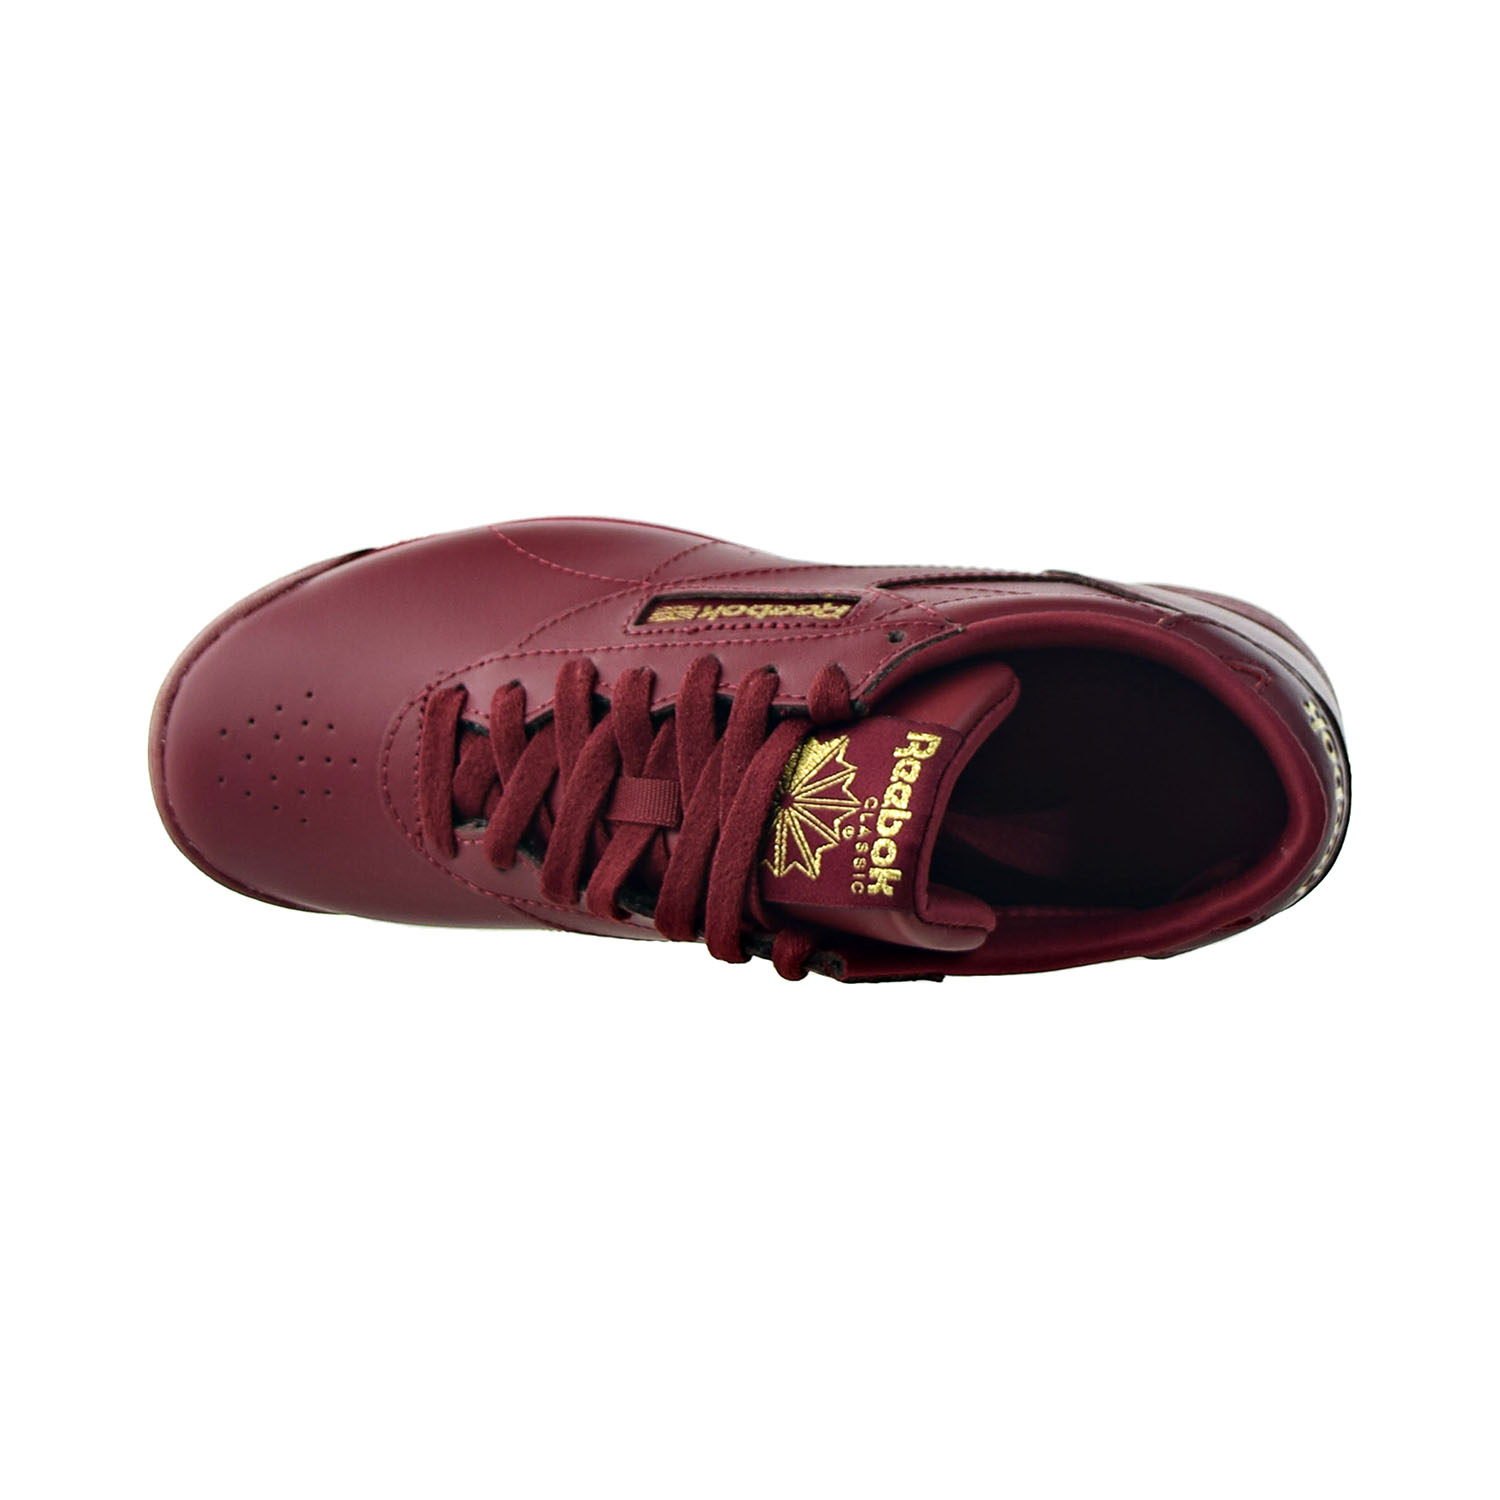 Reebok F/S FreeStyle Lo Women's Shoes Merlot-Merlot gz8654 (6.5 M US)